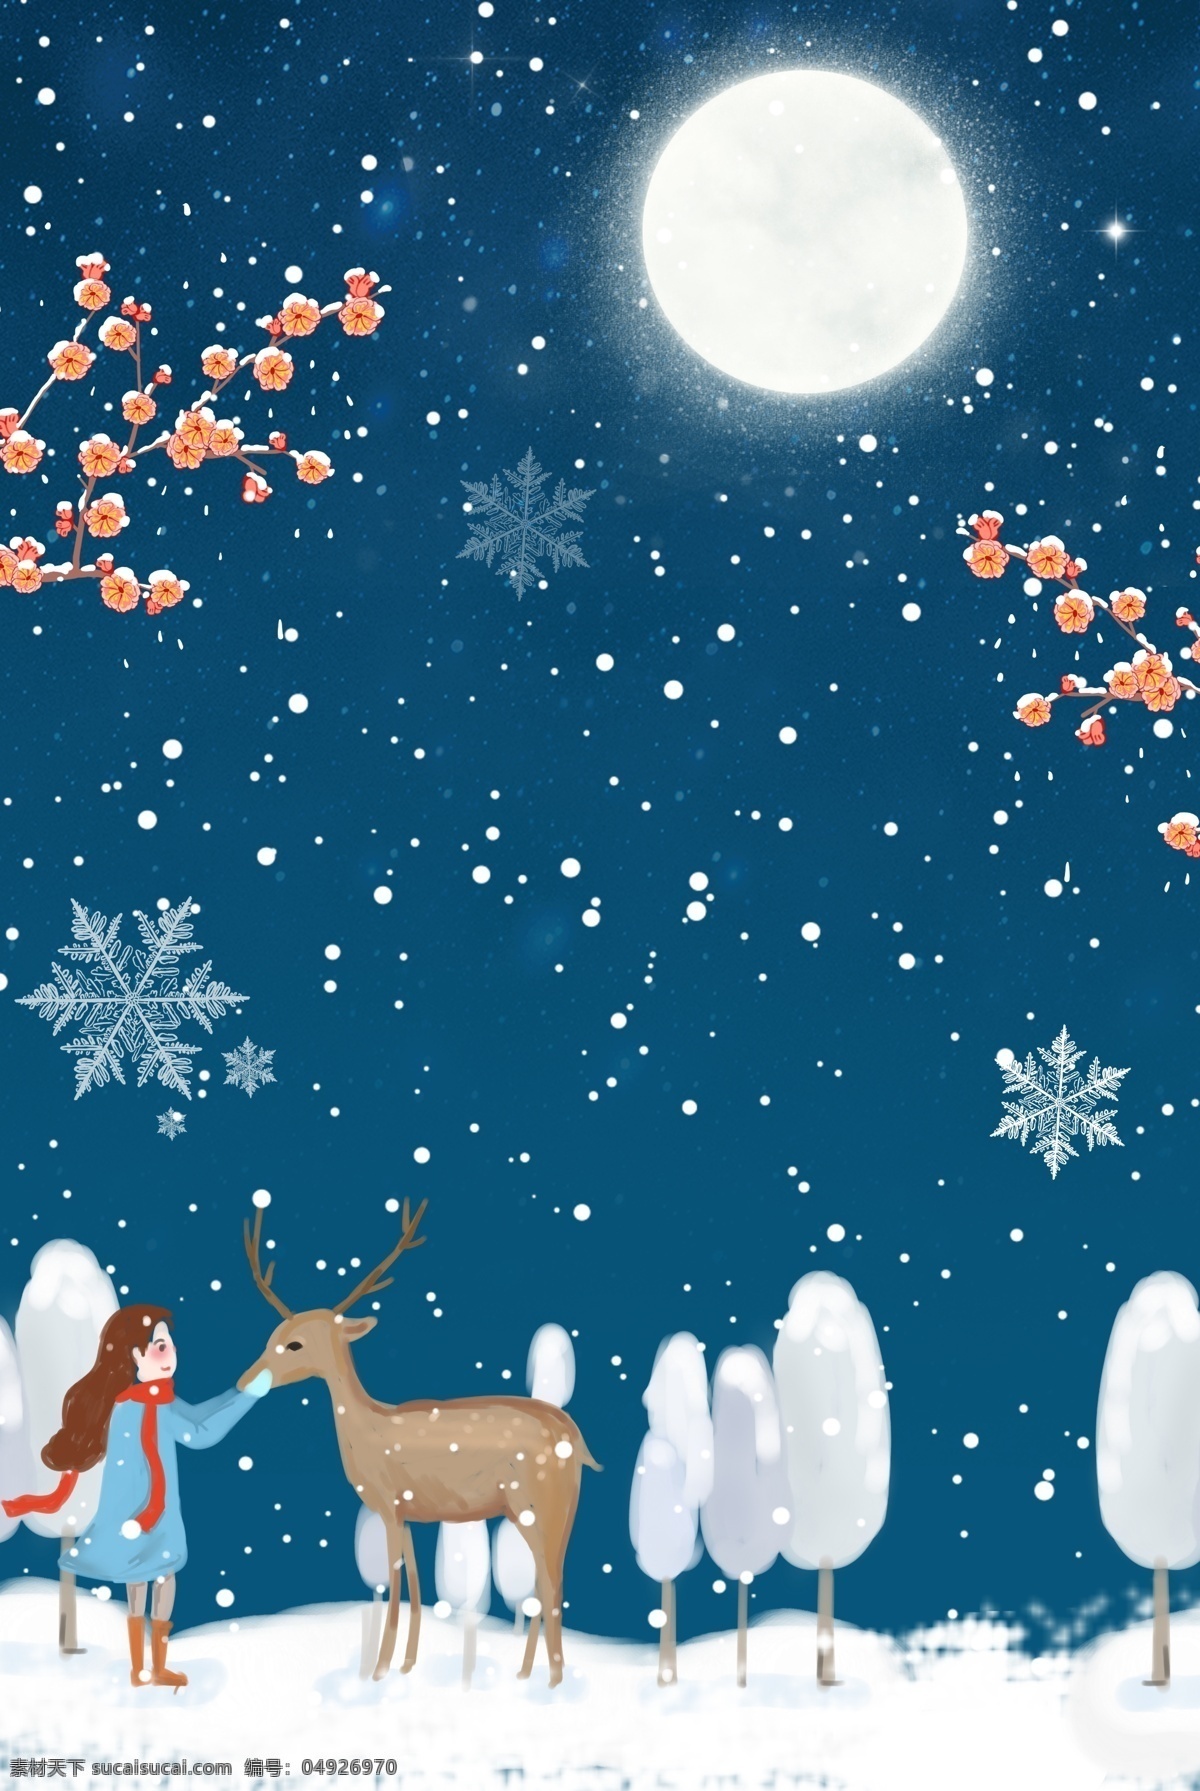 唯美 女孩 小鹿 星空 夜景 大雪 节气 海报 二十四节气 浪漫 雪花 手绘 仙境 宣传海报